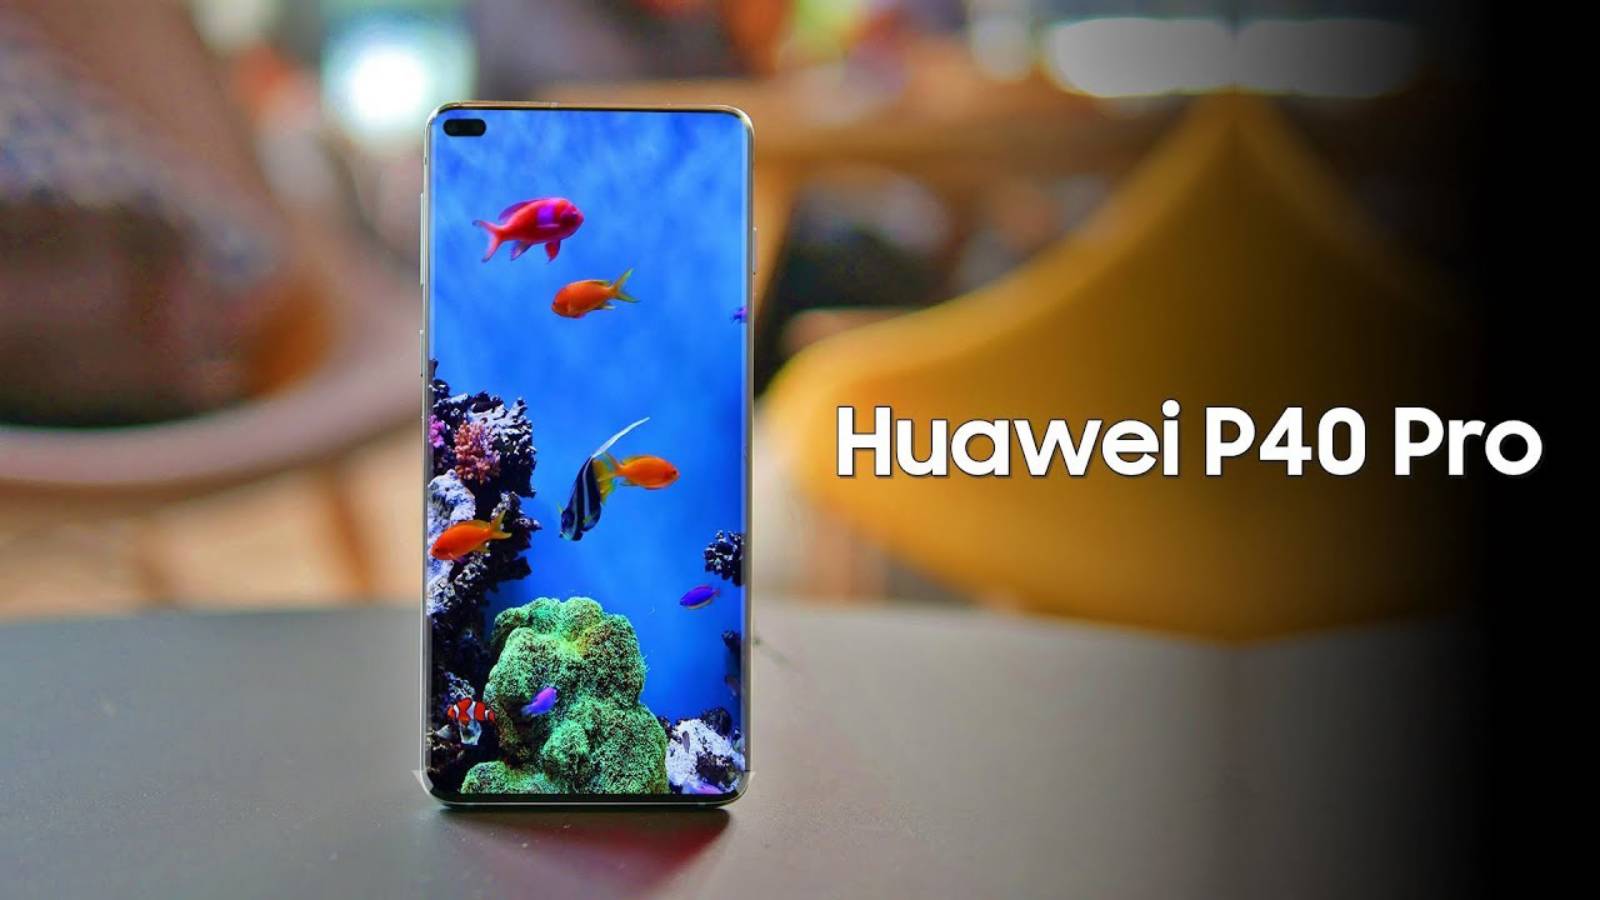 Chargement du Huawei P40 Pro